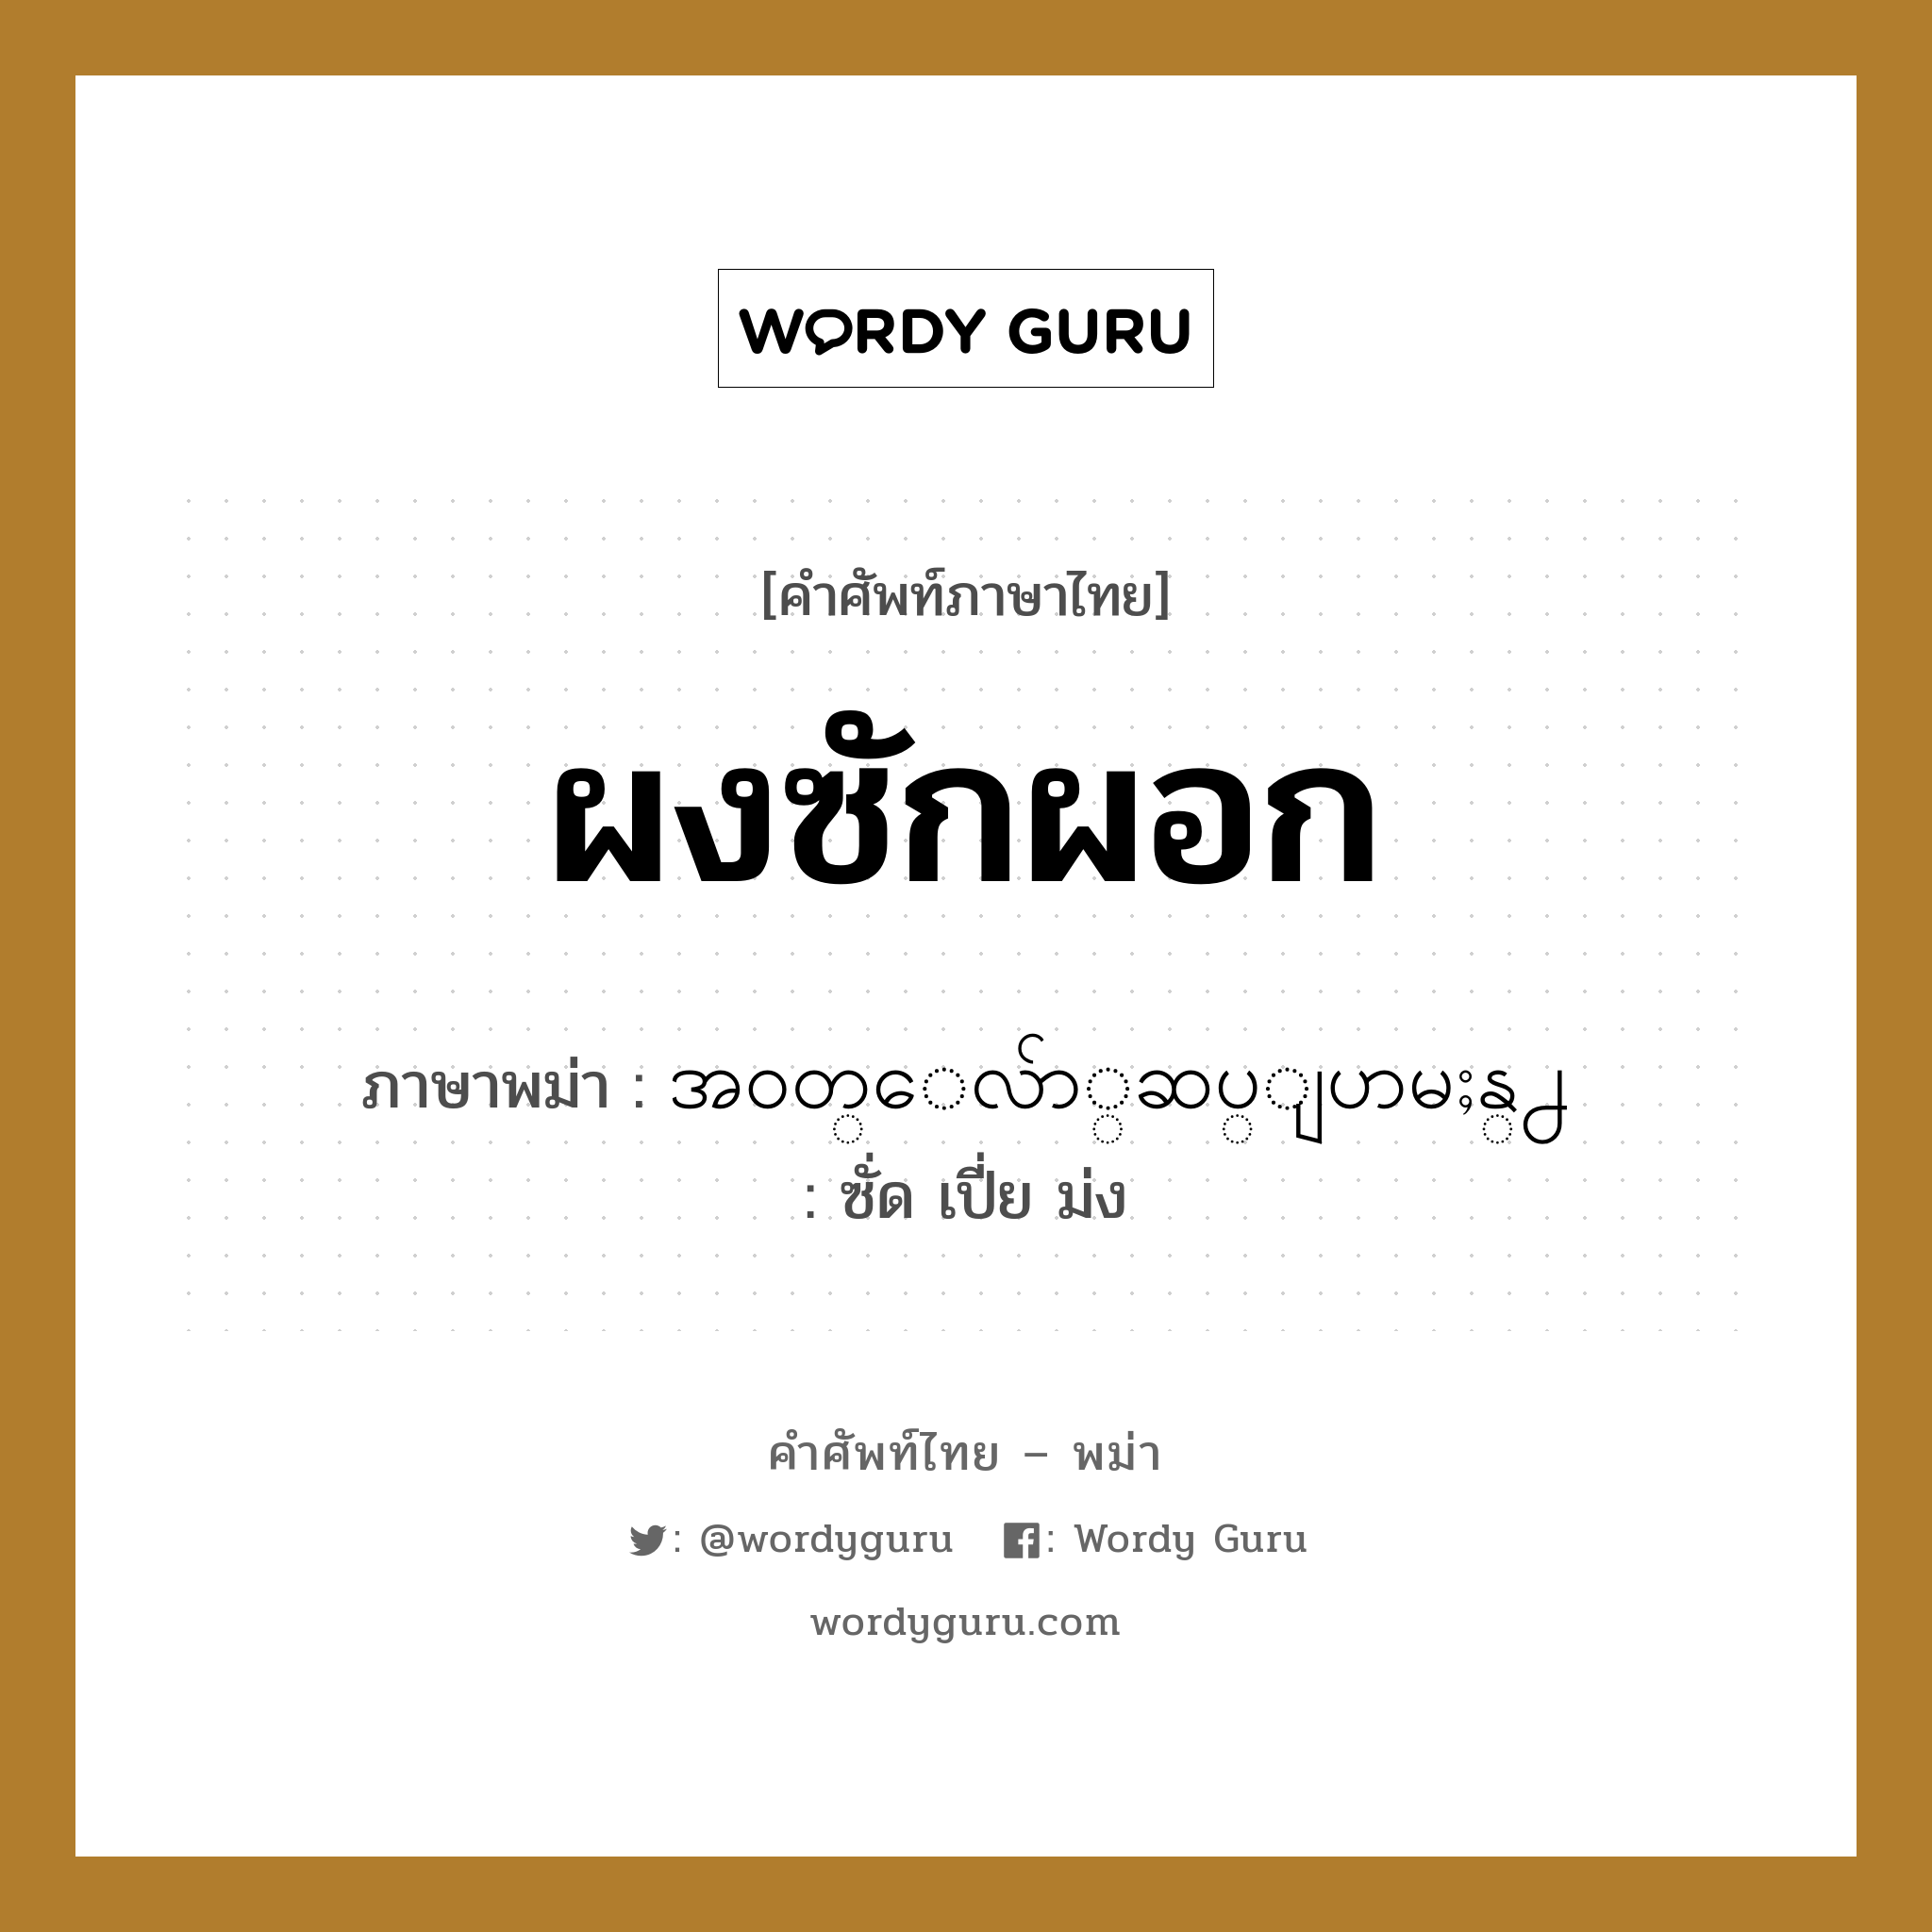 အ၀တ္ေလ်ာ္ဆပ္ျပာမႈန္႕ ภาษาไทย?, คำศัพท์ภาษาไทย - พม่า အ၀တ္ေလ်ာ္ဆပ္ျပာမႈန္႕ ภาษาพม่า ผงซักผอก หมวด ของใช้ในห้องน้ำ ซั่ด เปี่ย ม่ง หมวด ของใช้ในห้องน้ำ